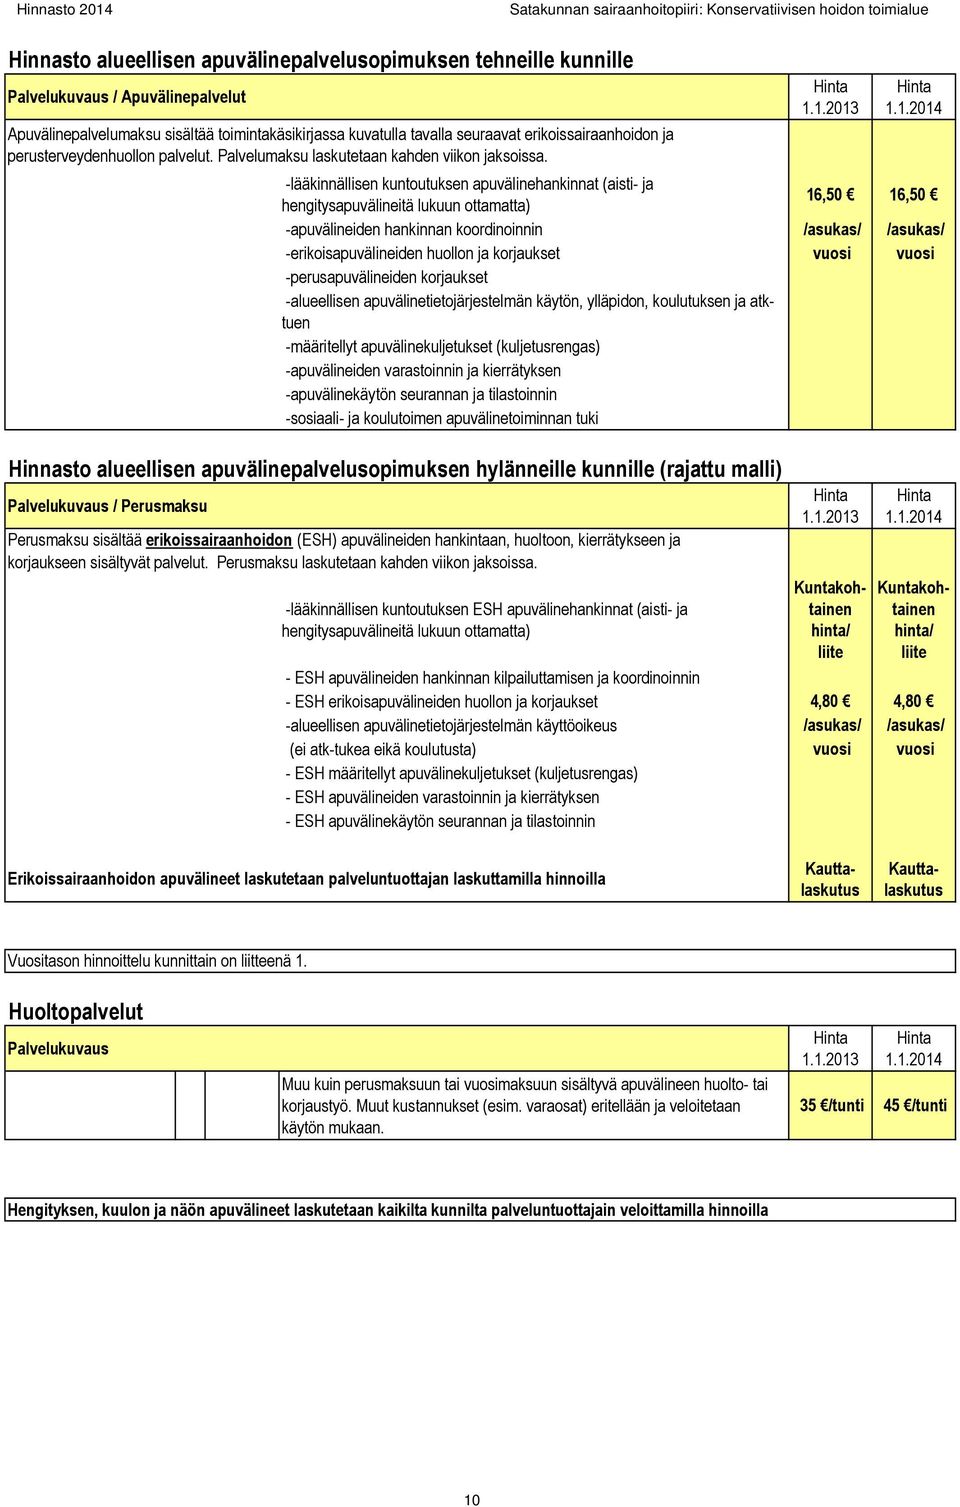 1.2013 1.1.2014 -lääkinnällisen kuntoutuksen apuvälinehankinnat (aisti- ja hengitysapuvälineitä lukuun ottamatta) 16,50 16,50 -apuvälineiden hankinnan koordinoinnin /asukas/ /asukas/